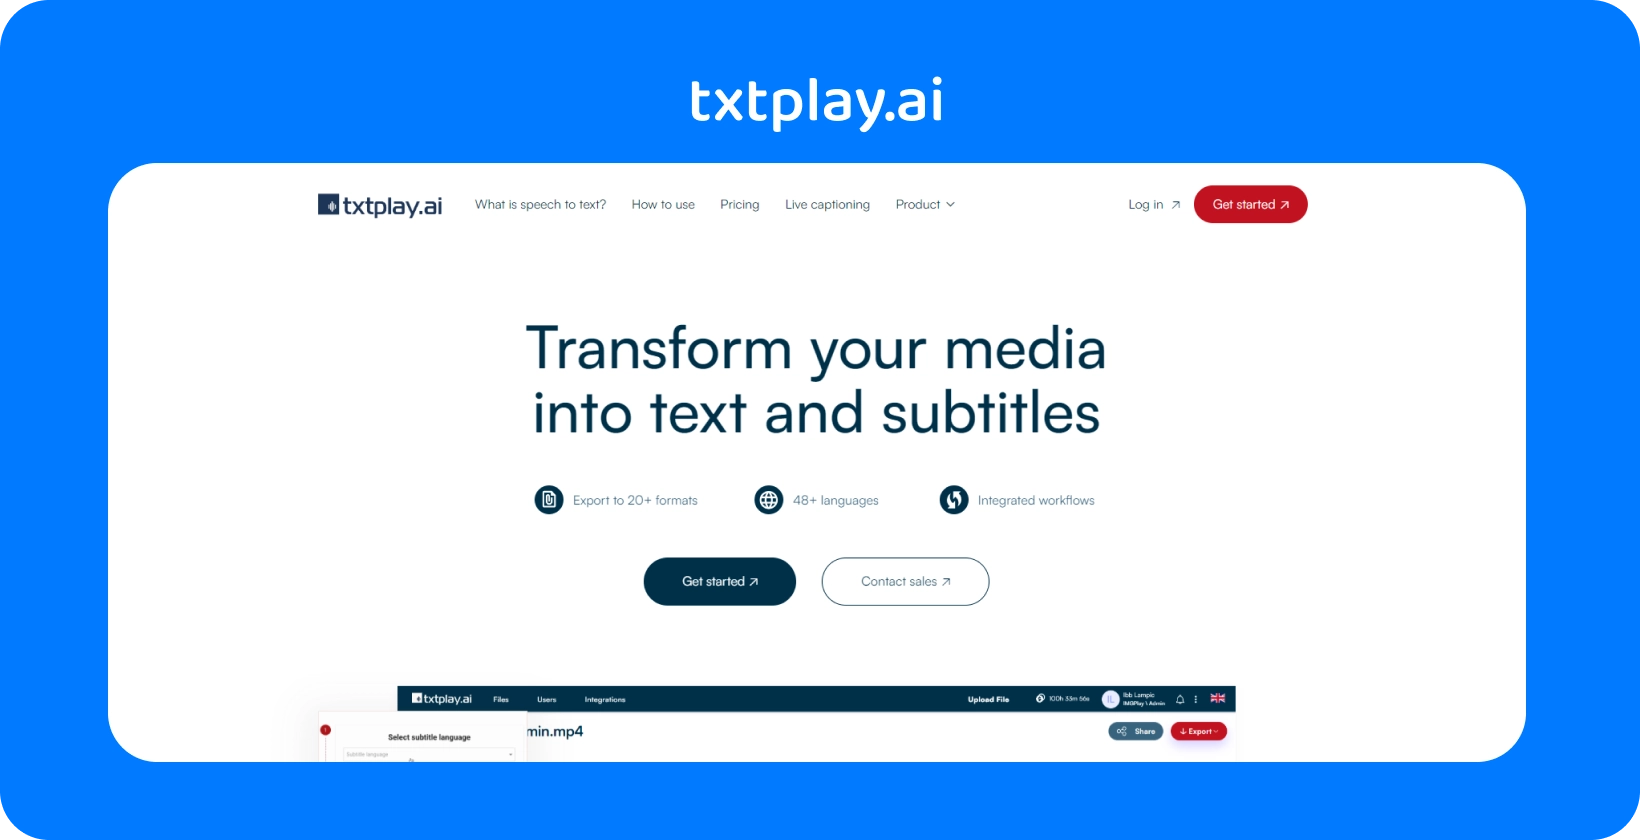 Transforme a mídia em texto e legendas com txtplay.ai, suportando 48+ idiomas e 20+ formatos.